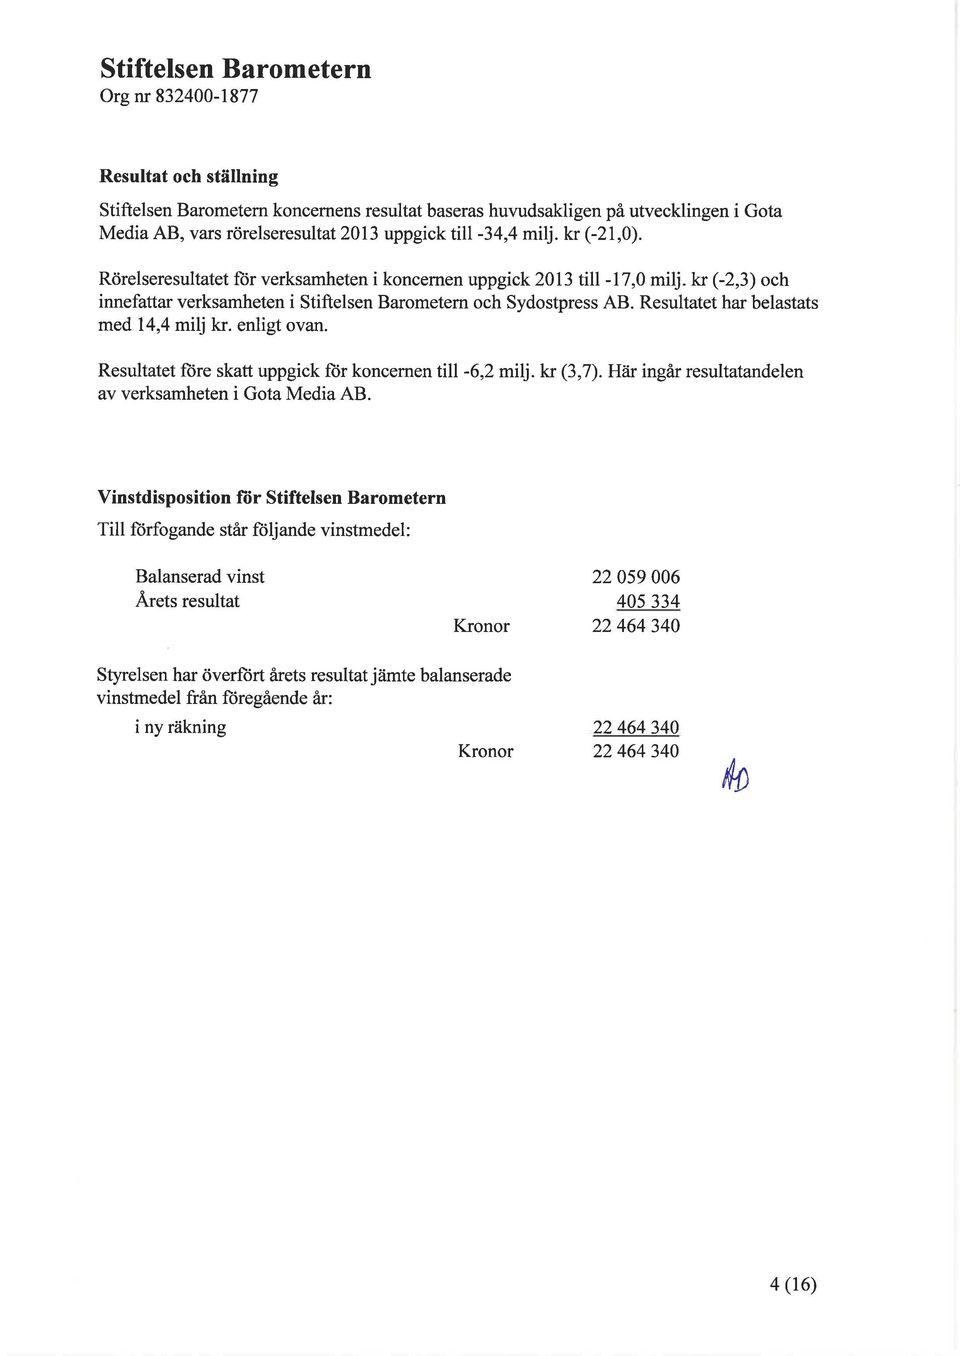 enligt ovan. Resultatet ft)re skatt uppgick fiir koncernen till -6,2 milj.kr (3,7). Här ingår resultatandelen av verksamheten i Gota Media AB.